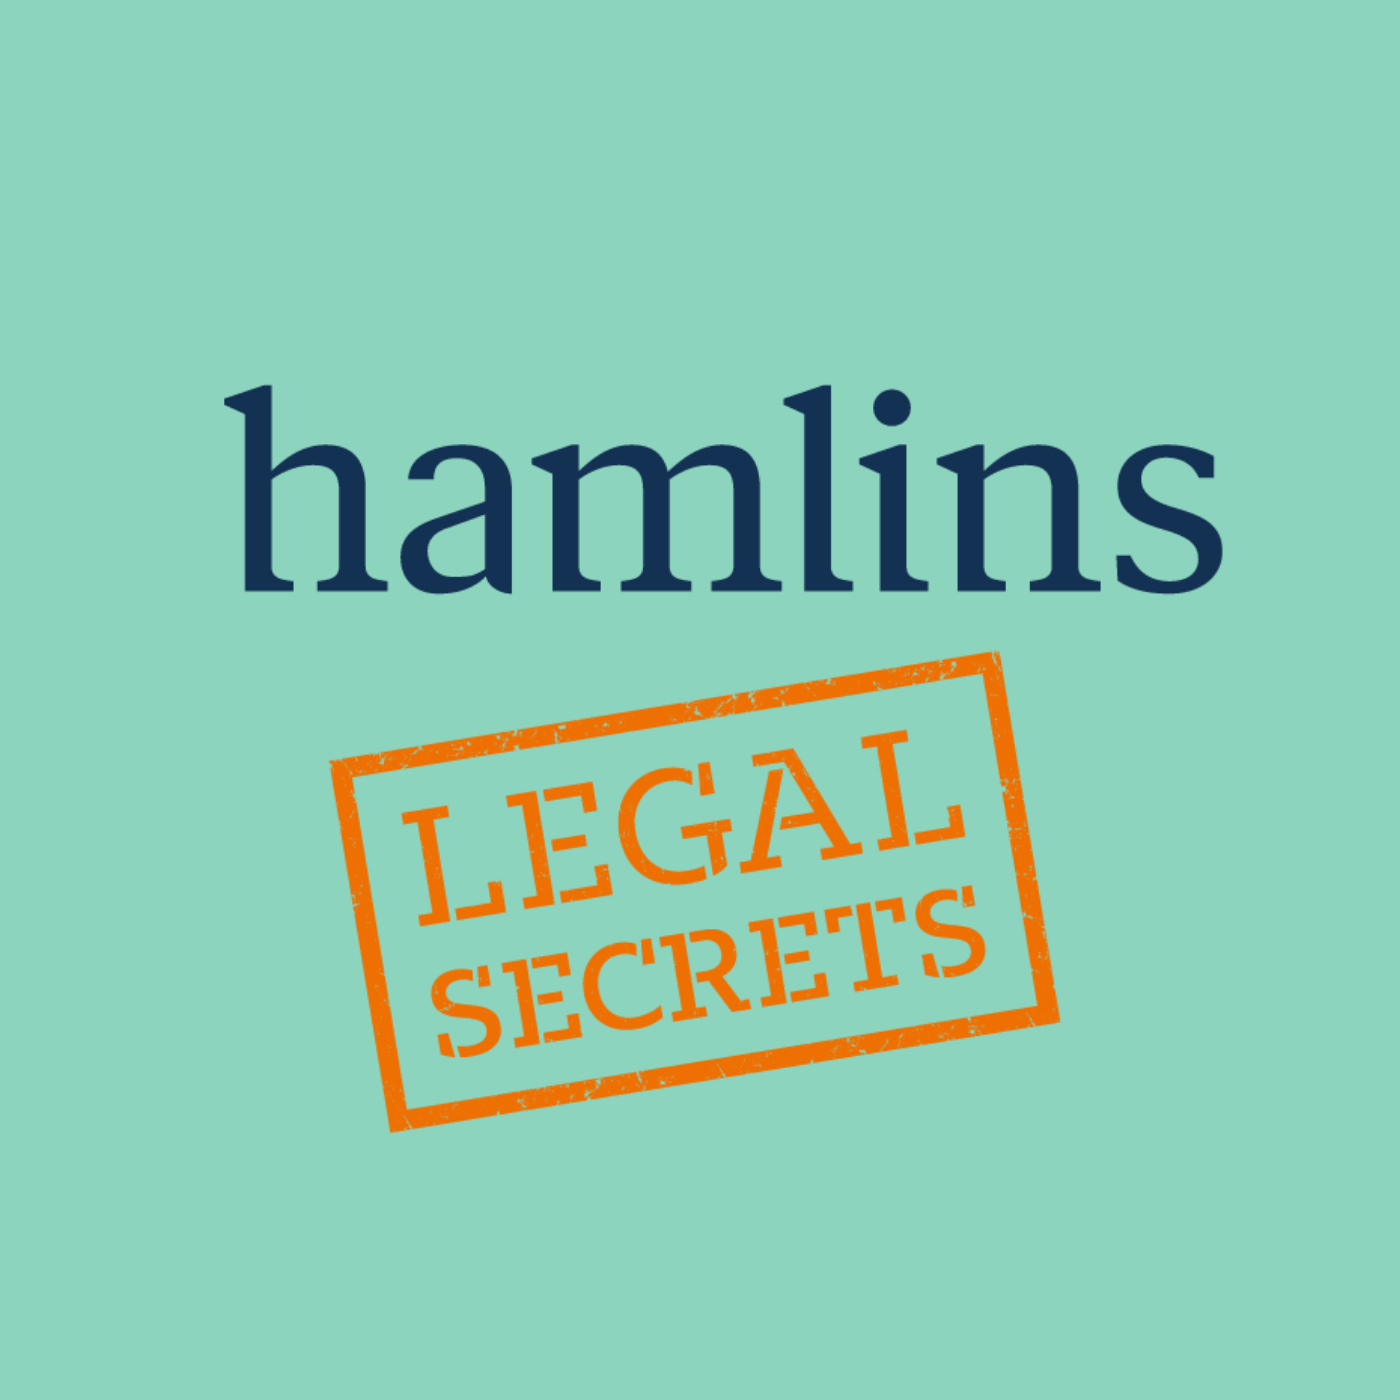 Hamlins Legal Secrets